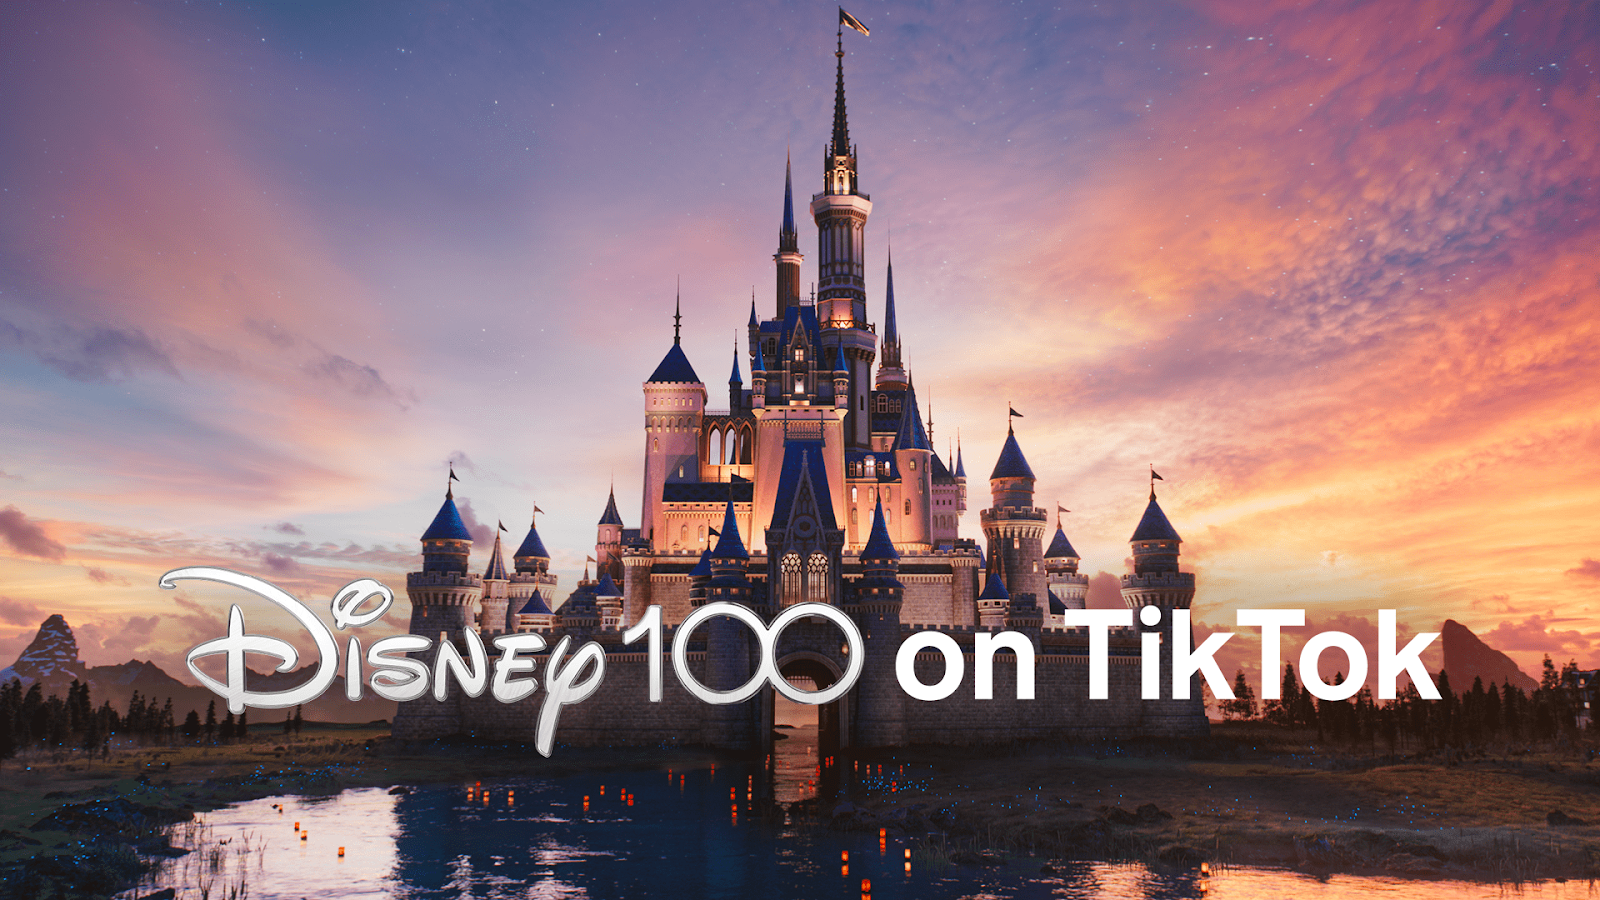 ディズニー: Disney100 on TikTok キャンペーン